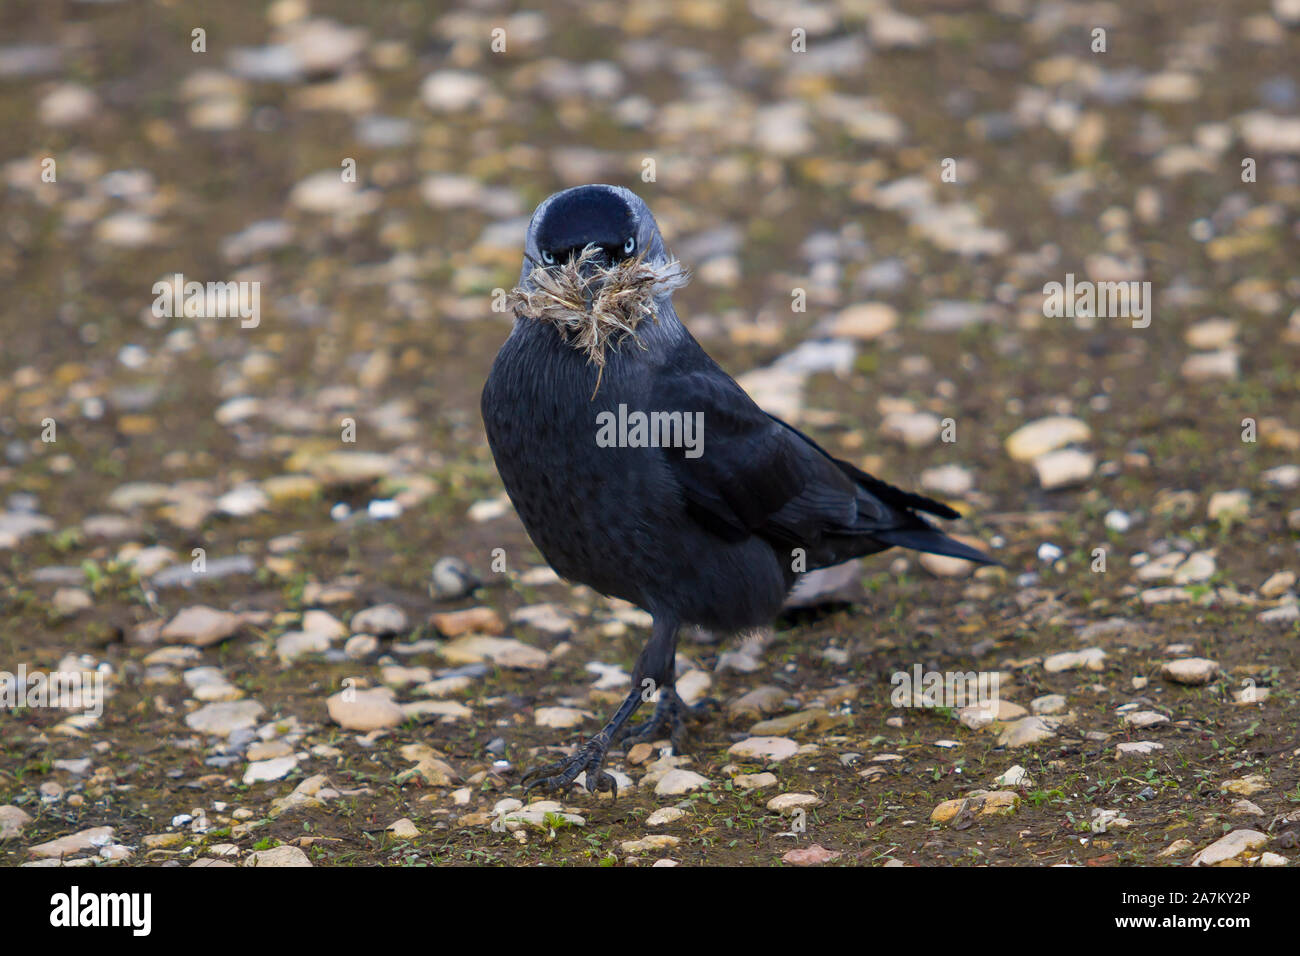 Oiseau sauvage de la jaquette du Royaume-Uni (Corvus monedula) debout isolé à l'extérieur sur le sol en regardant, matériel de nidification dans le bec. Corbeaux et corvidés britanniques. Banque D'Images